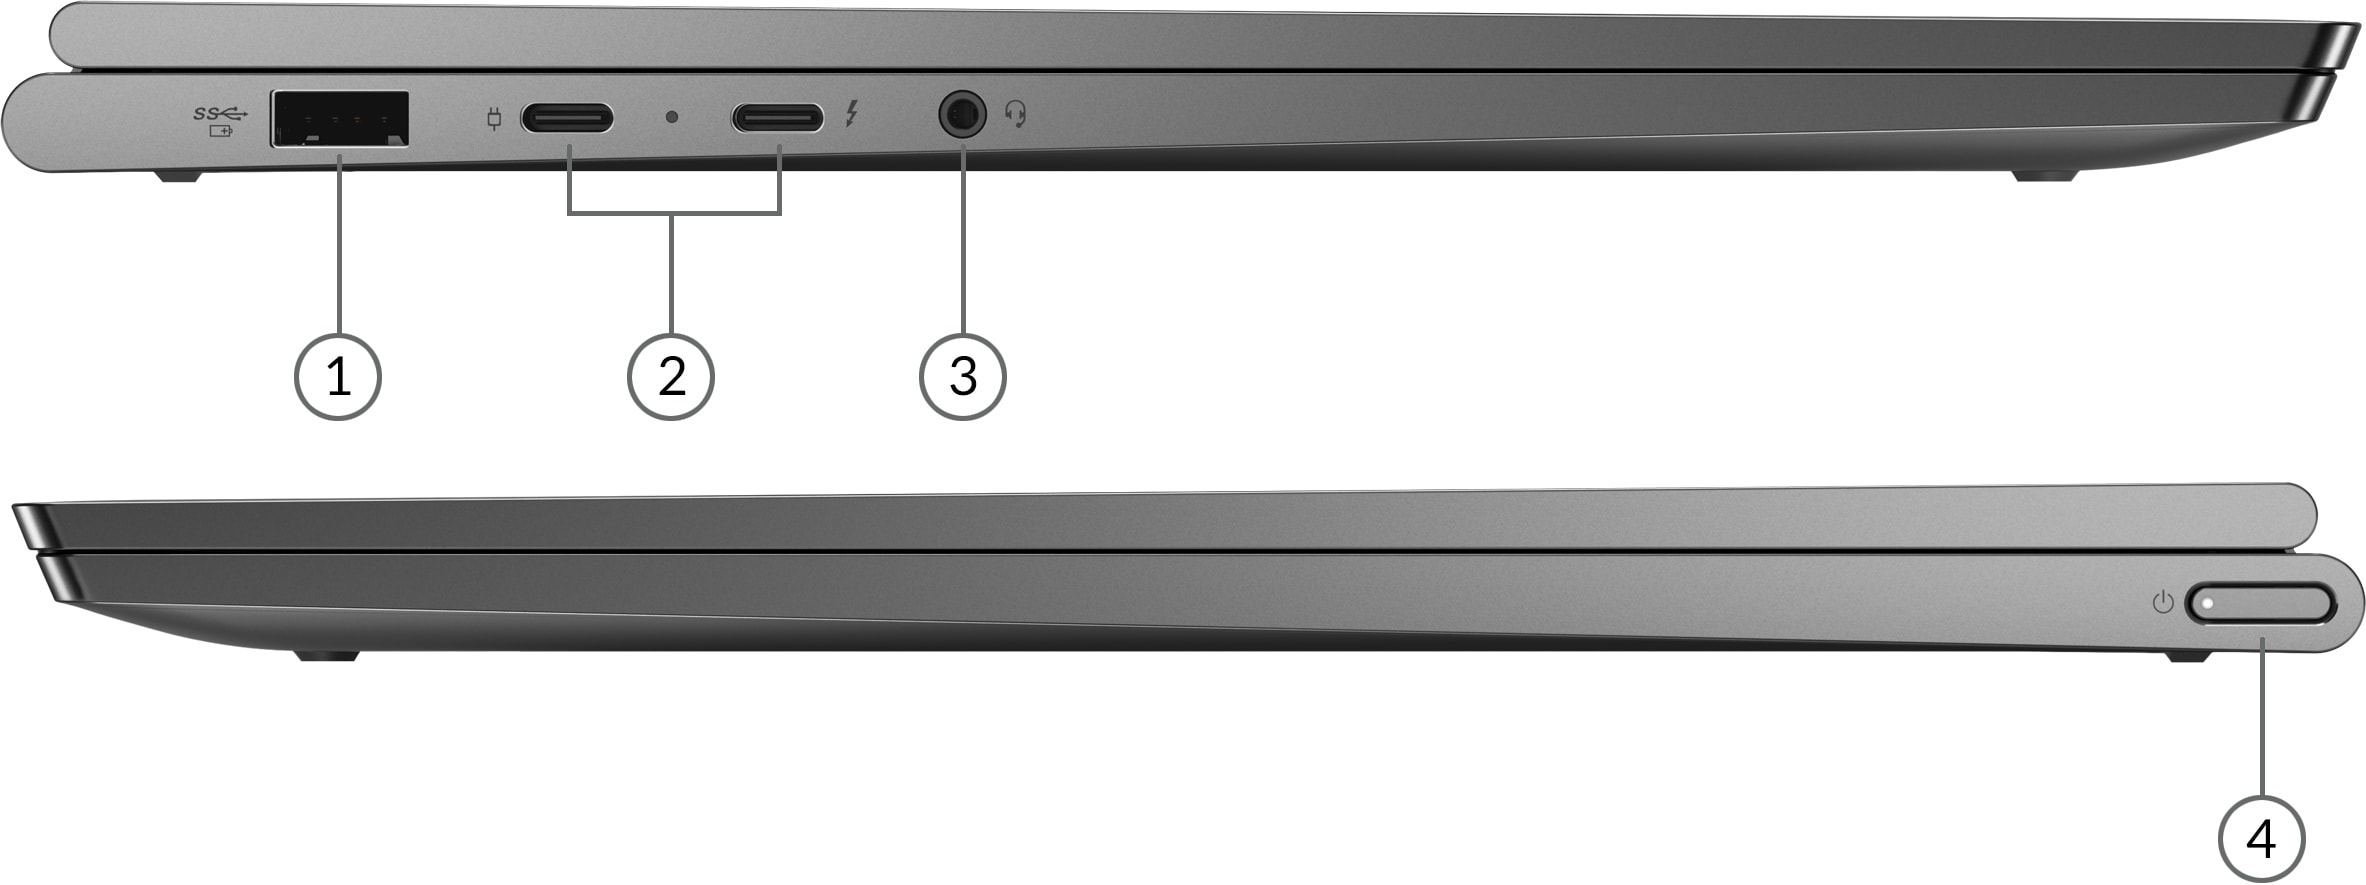 Lenovo Yoga C940 (14') med visning af porte